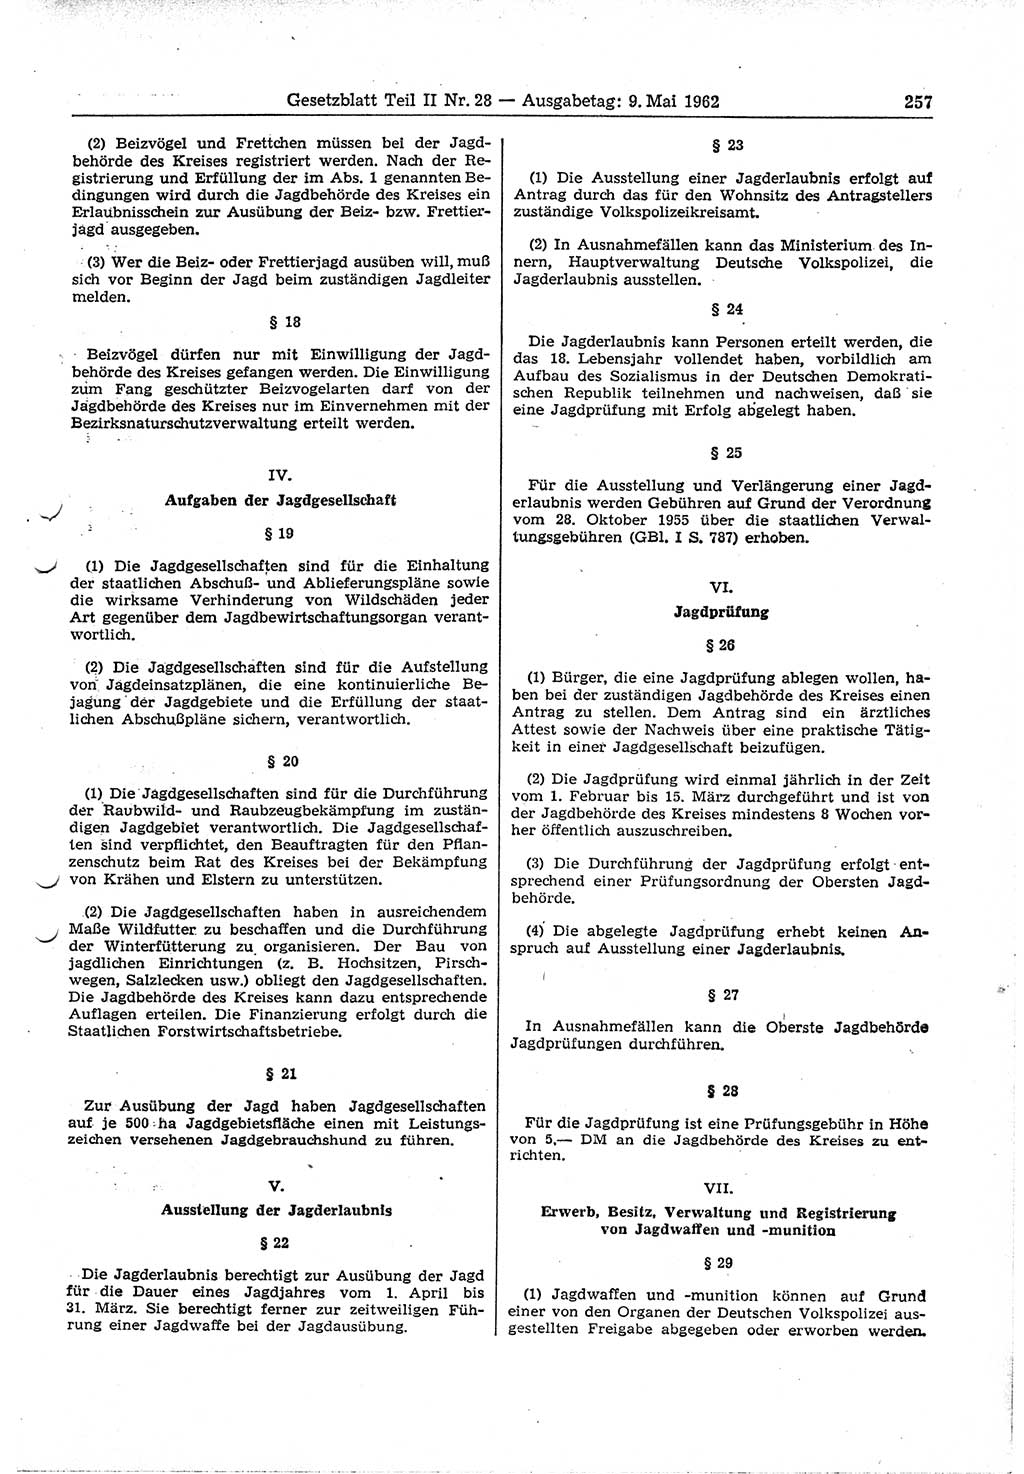 Gesetzblatt (GBl.) der Deutschen Demokratischen Republik (DDR) Teil ⅠⅠ 1962, Seite 257 (GBl. DDR ⅠⅠ 1962, S. 257)